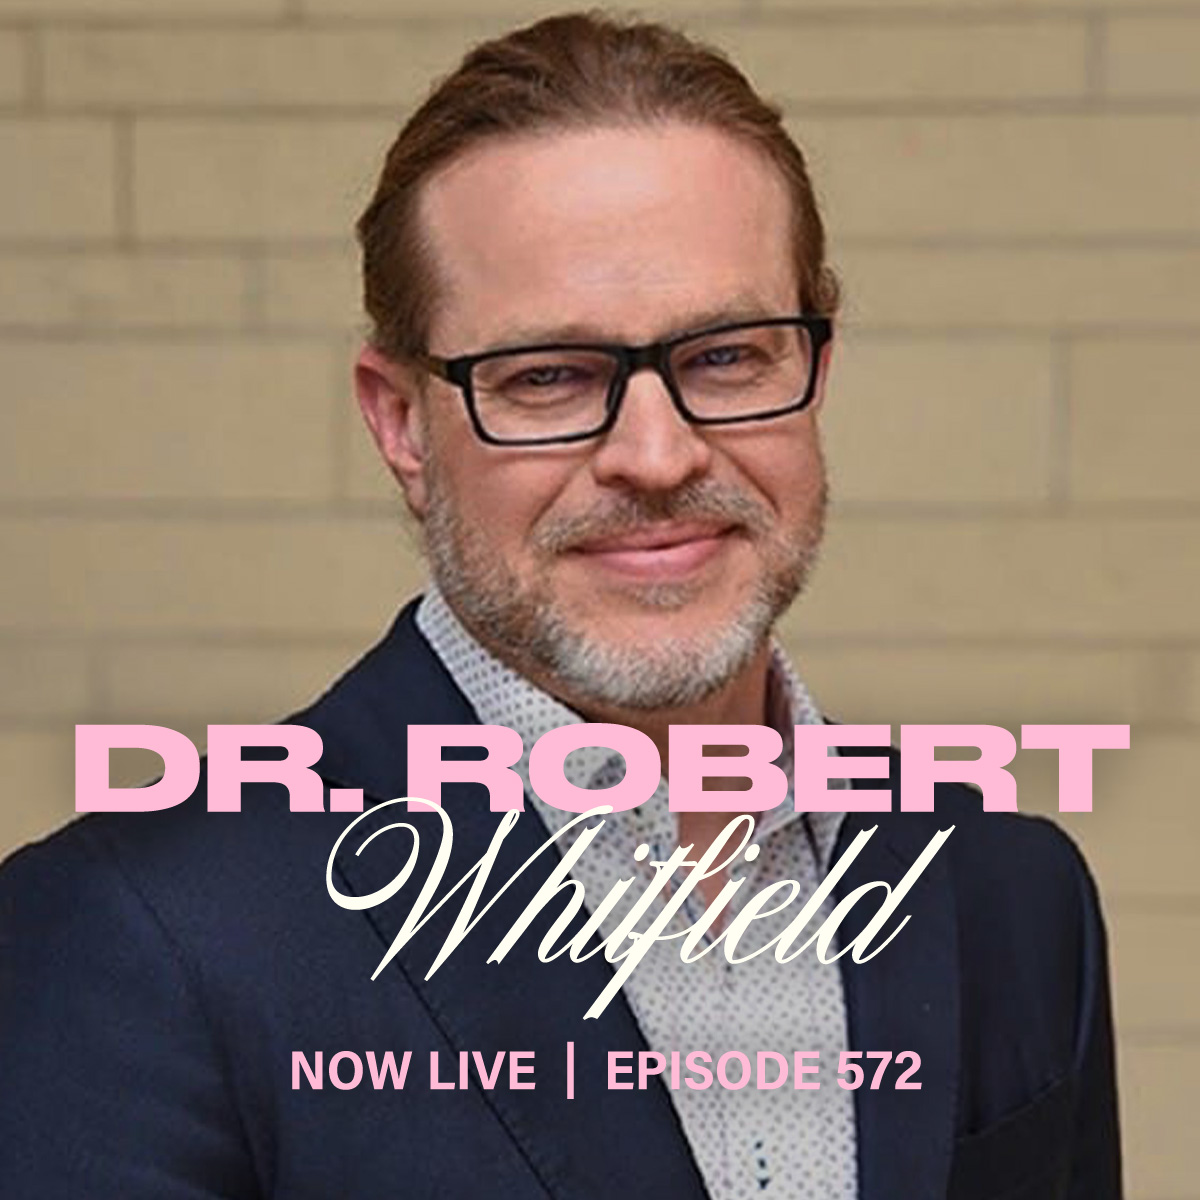 Dr. Robert Whitfield